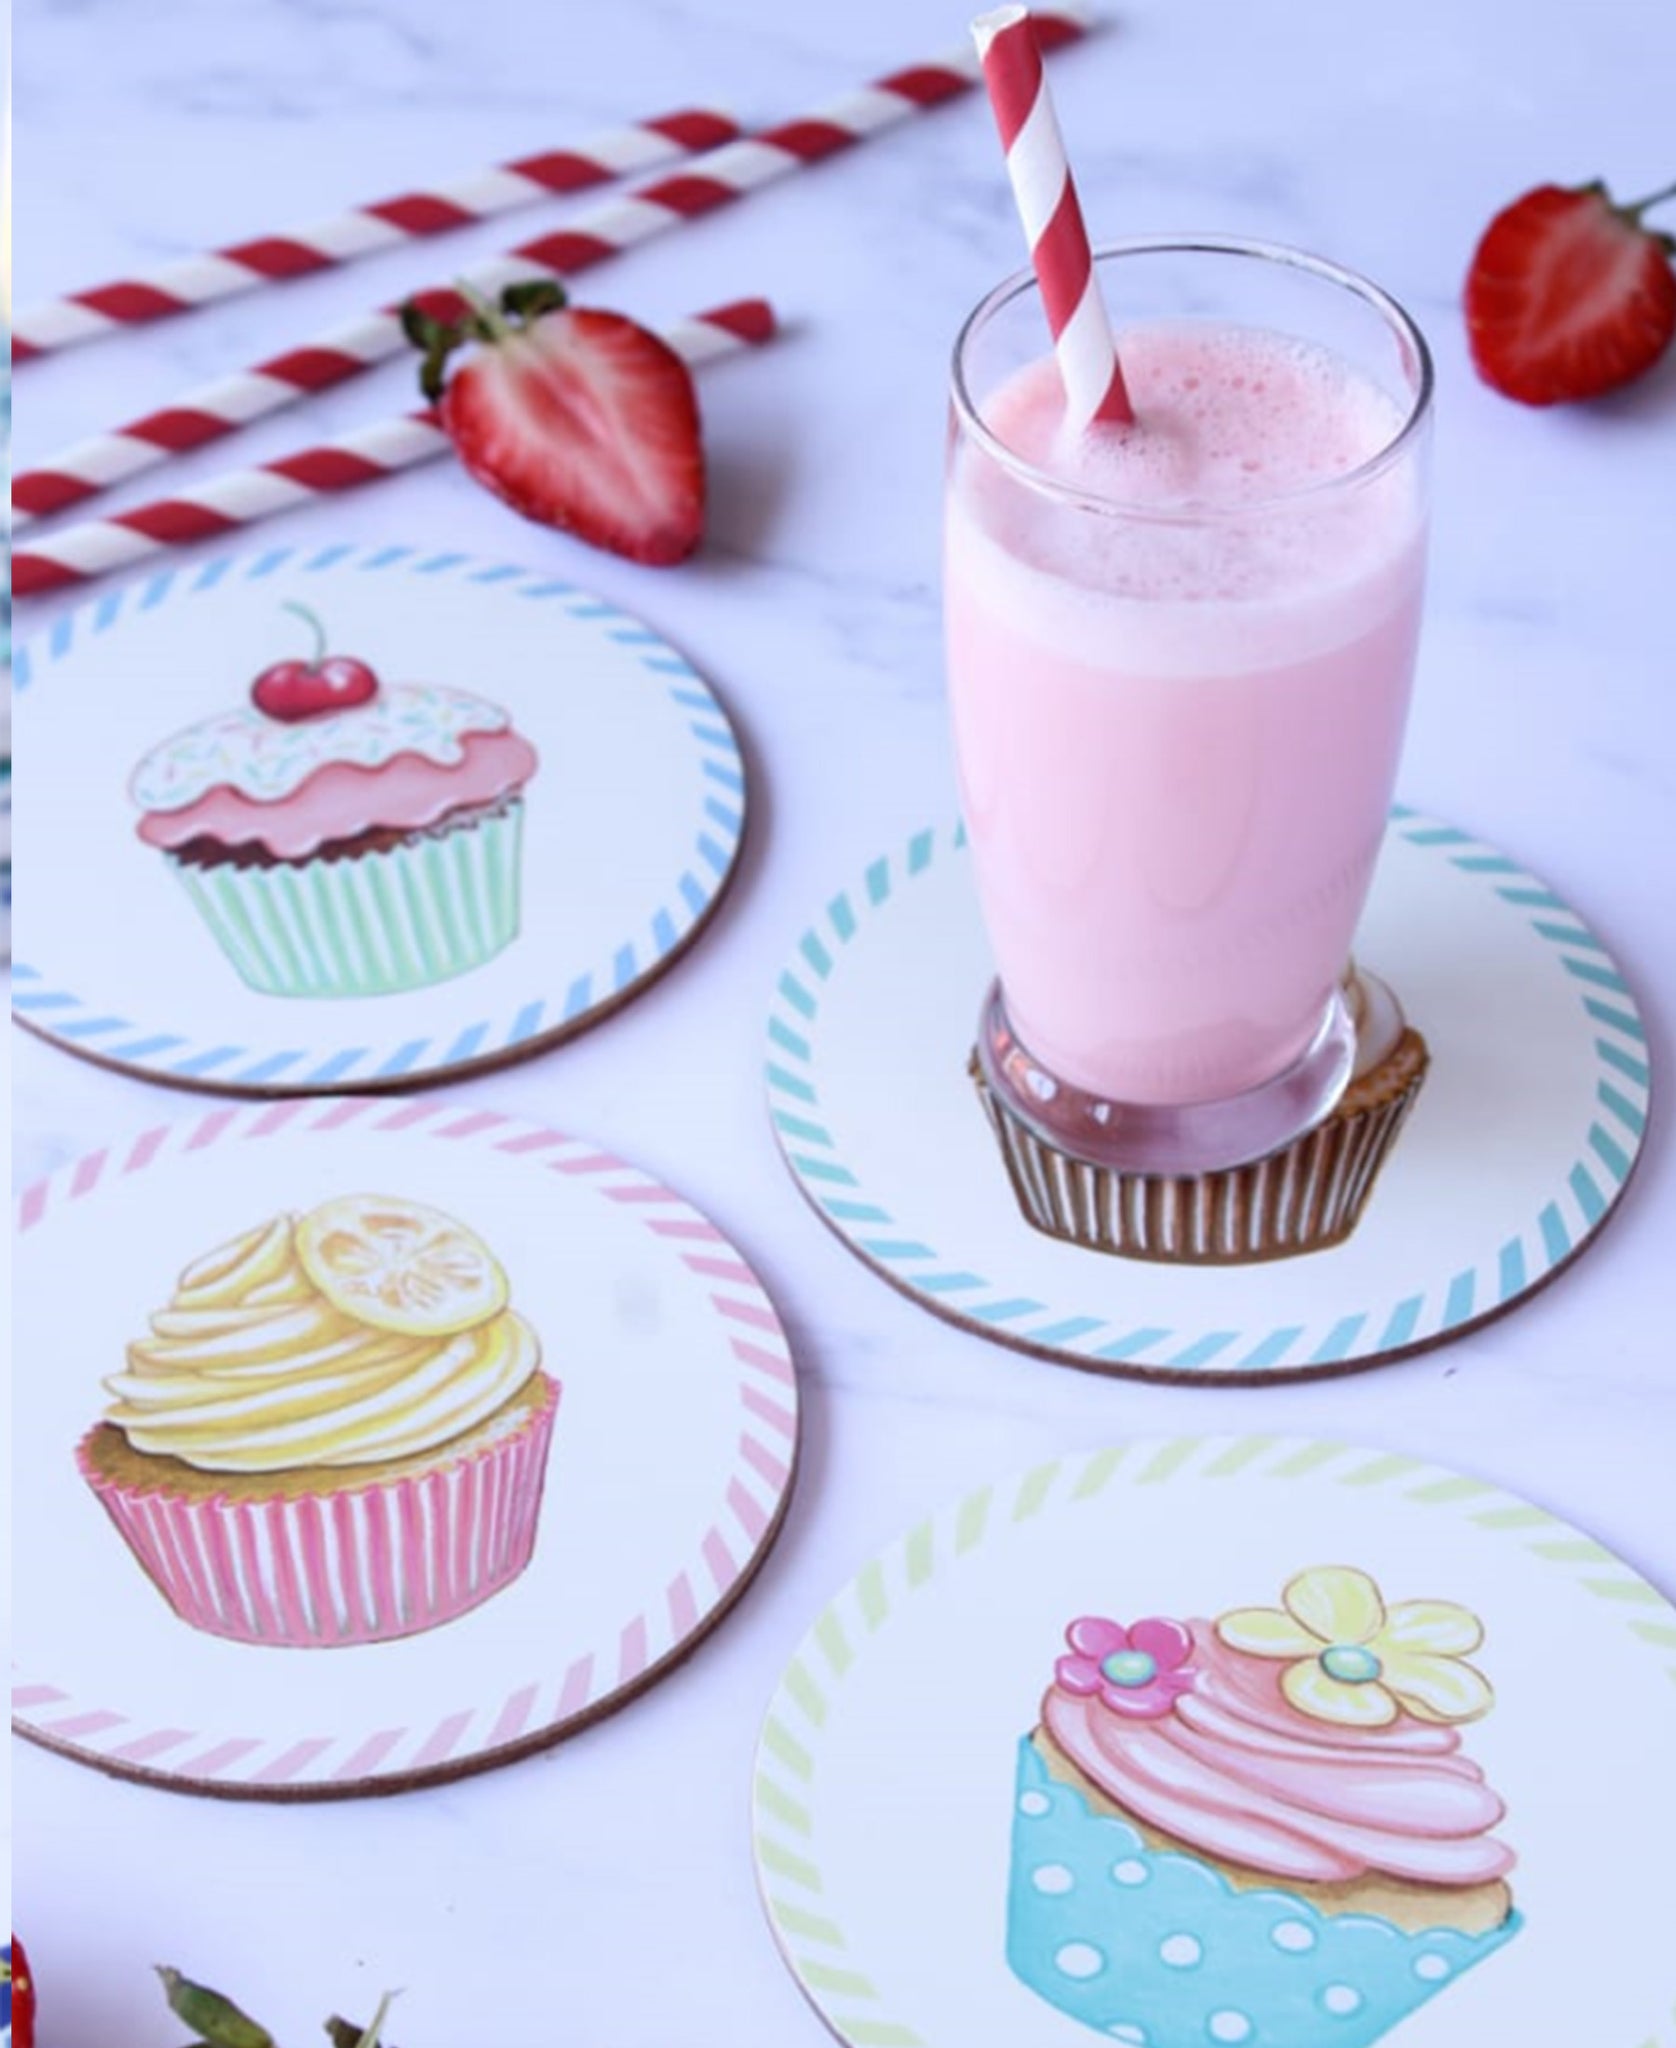 Kitchen Life Round Cupcake Coaster Set Of 4 - White